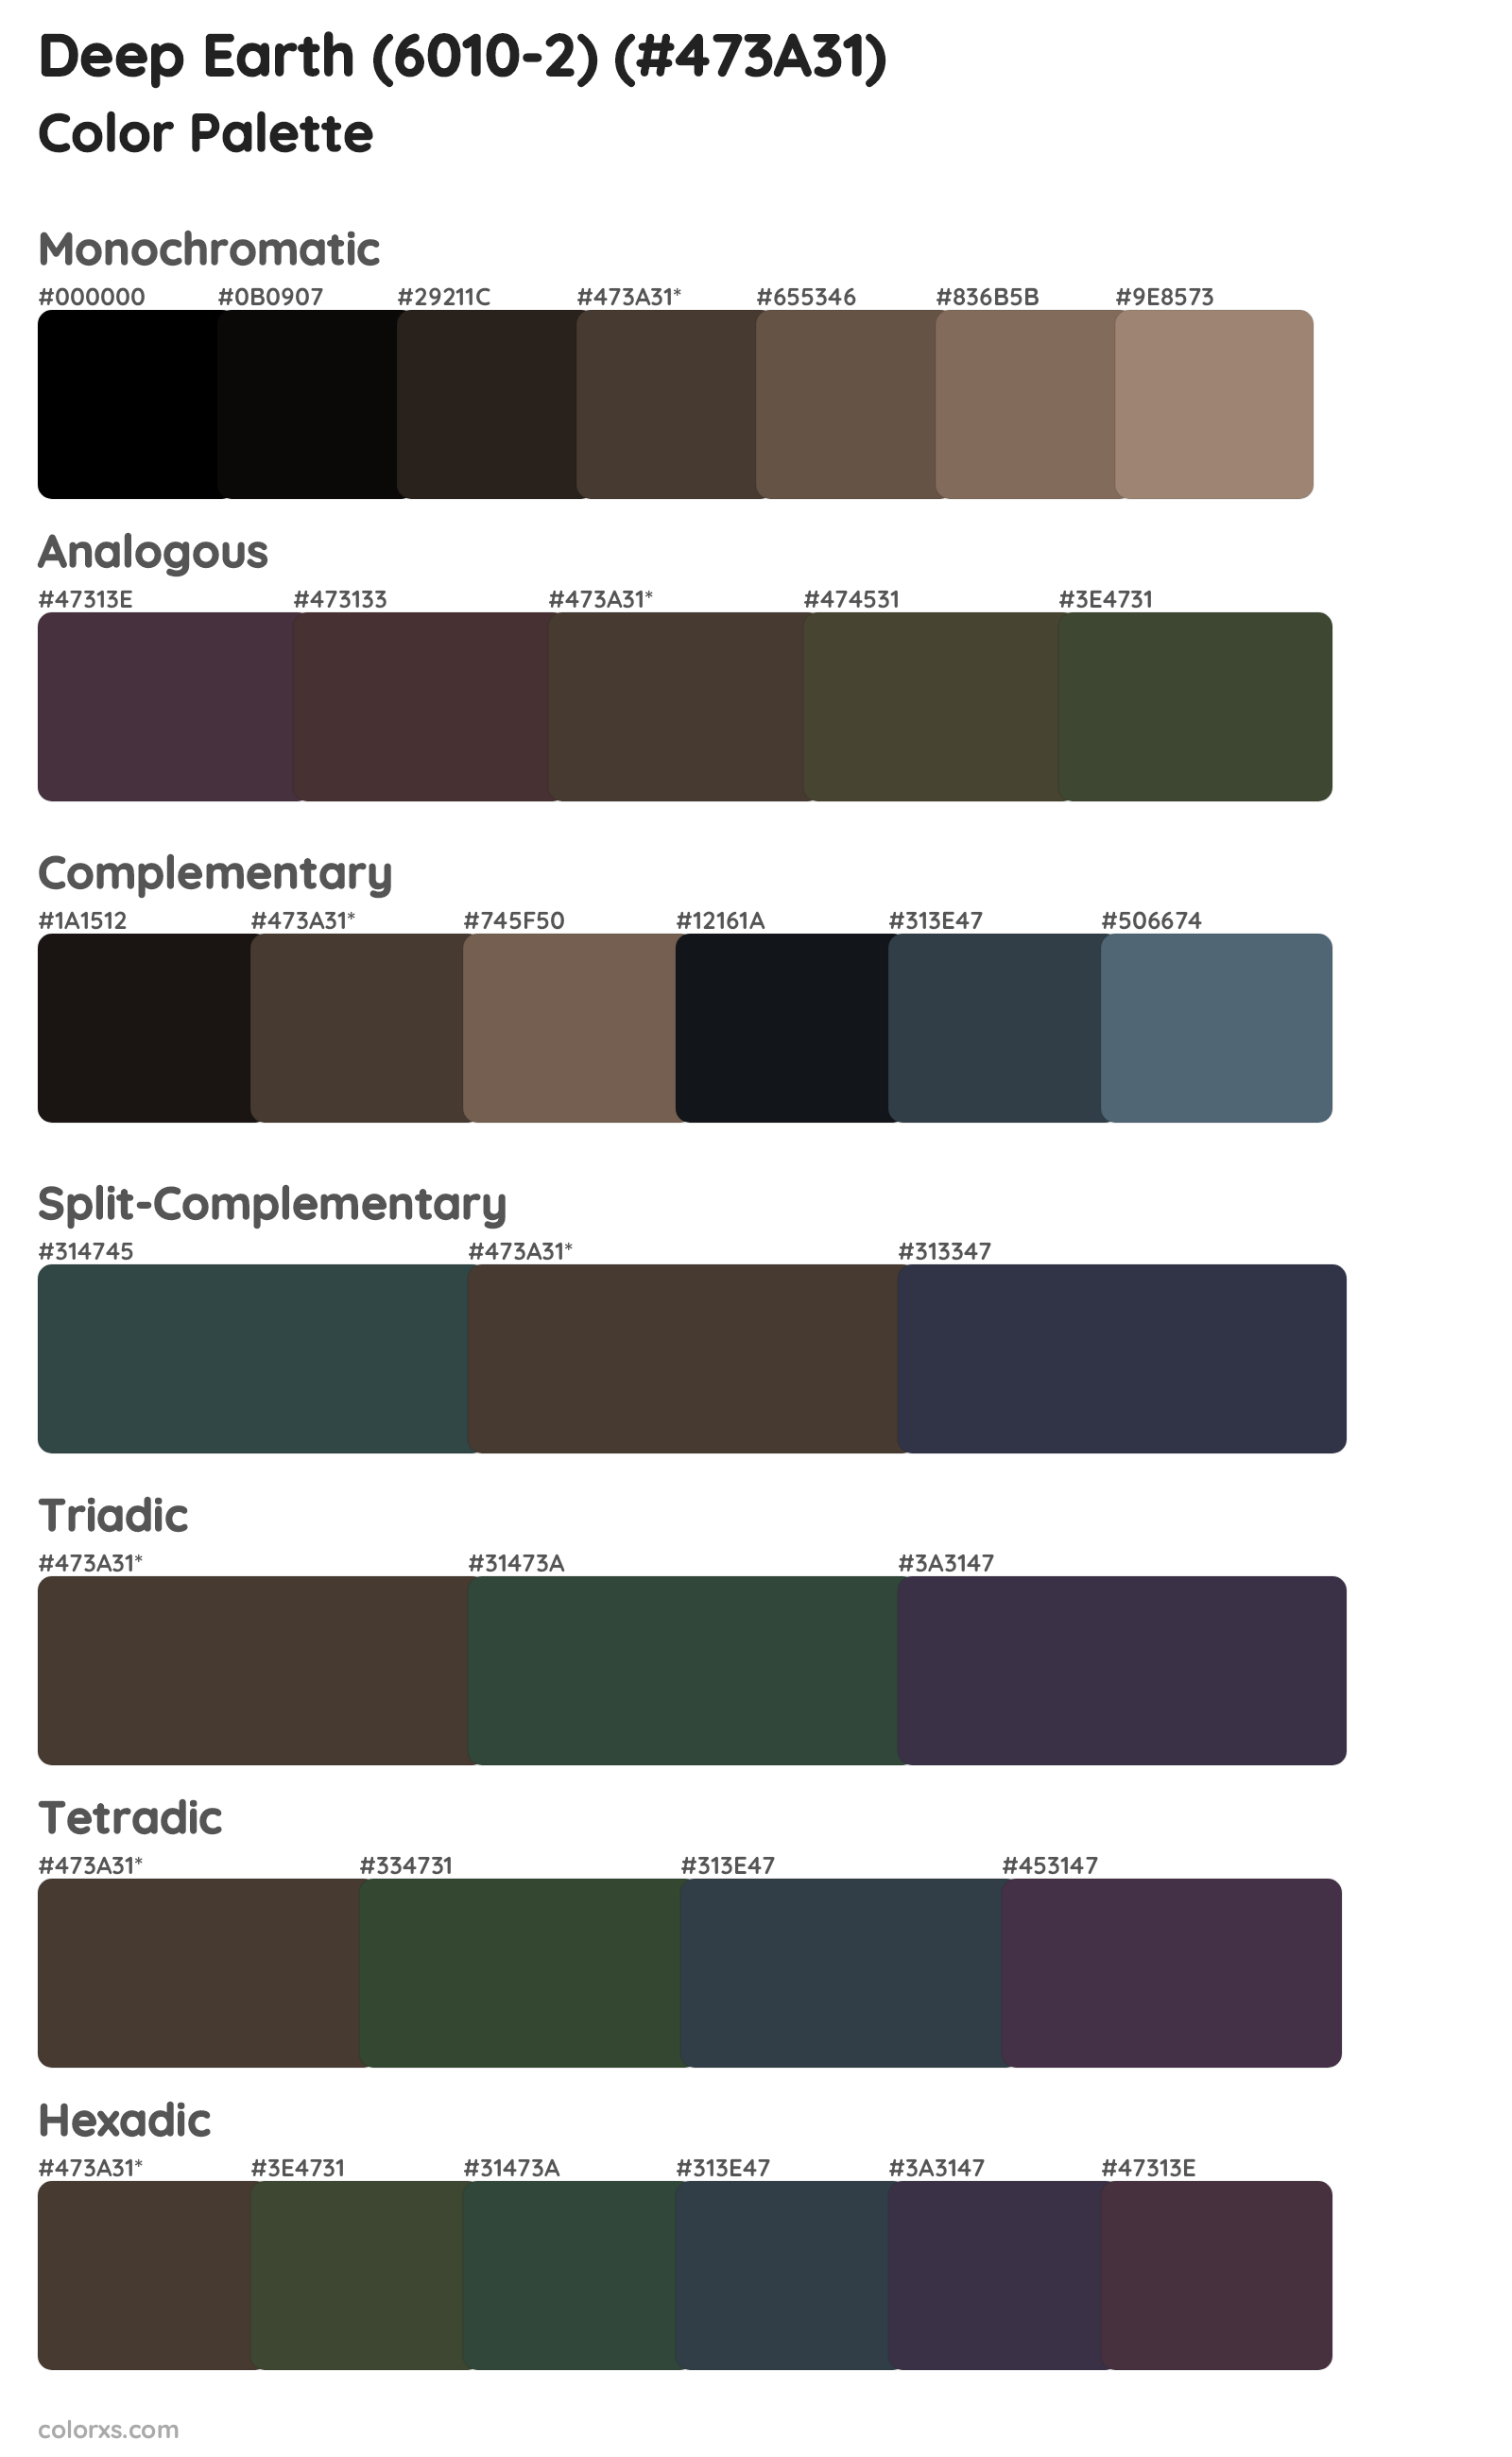 Deep Earth (6010-2) Color Scheme Palettes